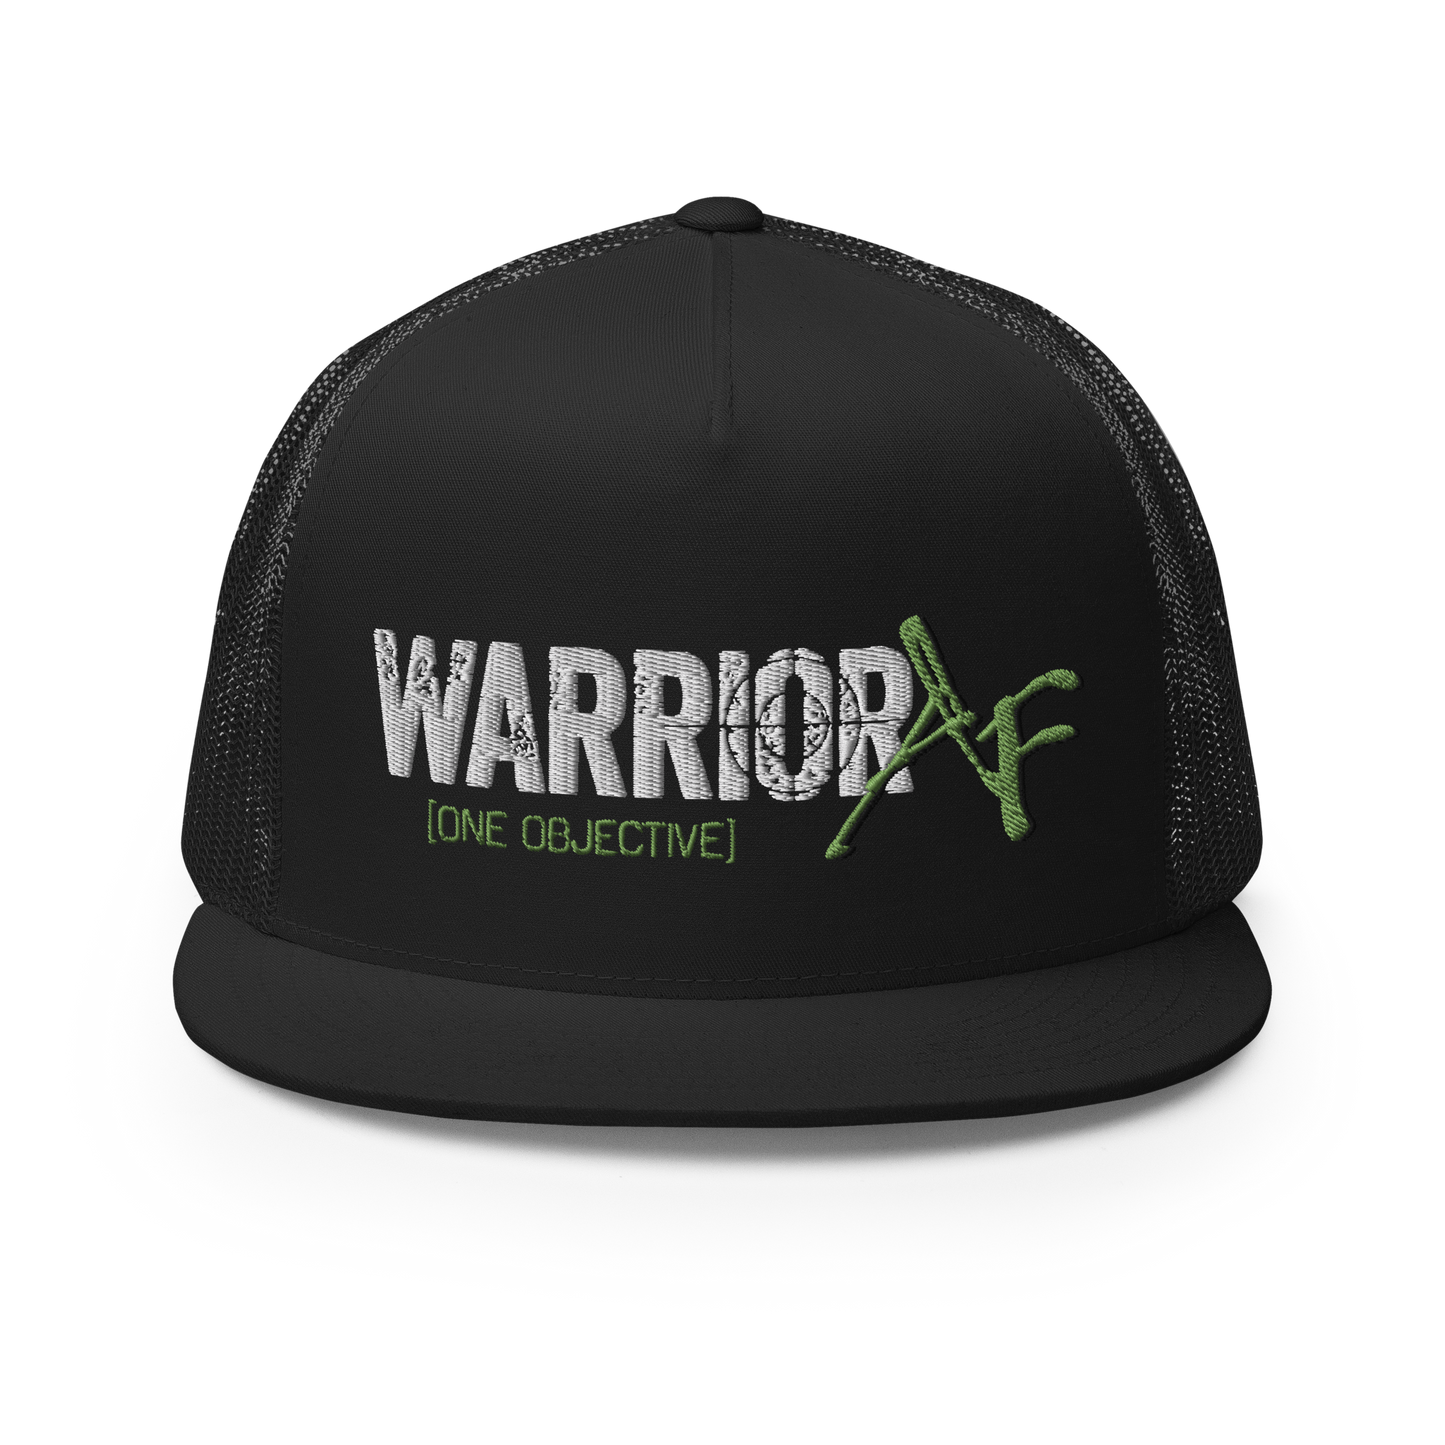 Snapback Hat - Warrior AF: Battleborne Collection